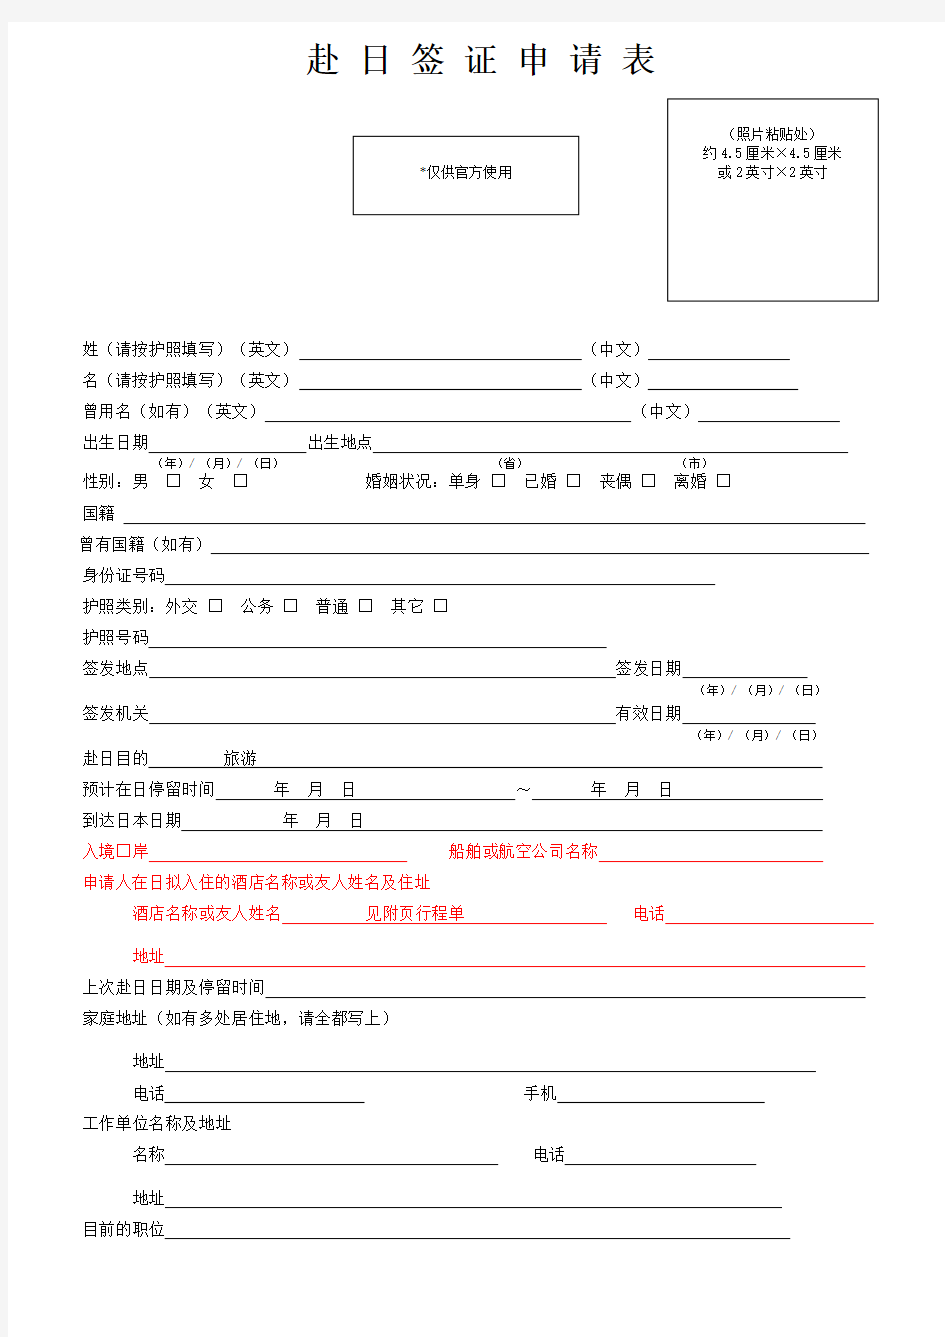 001.日本国签证申请书A4纸正反打印(表格中红色部分空着)